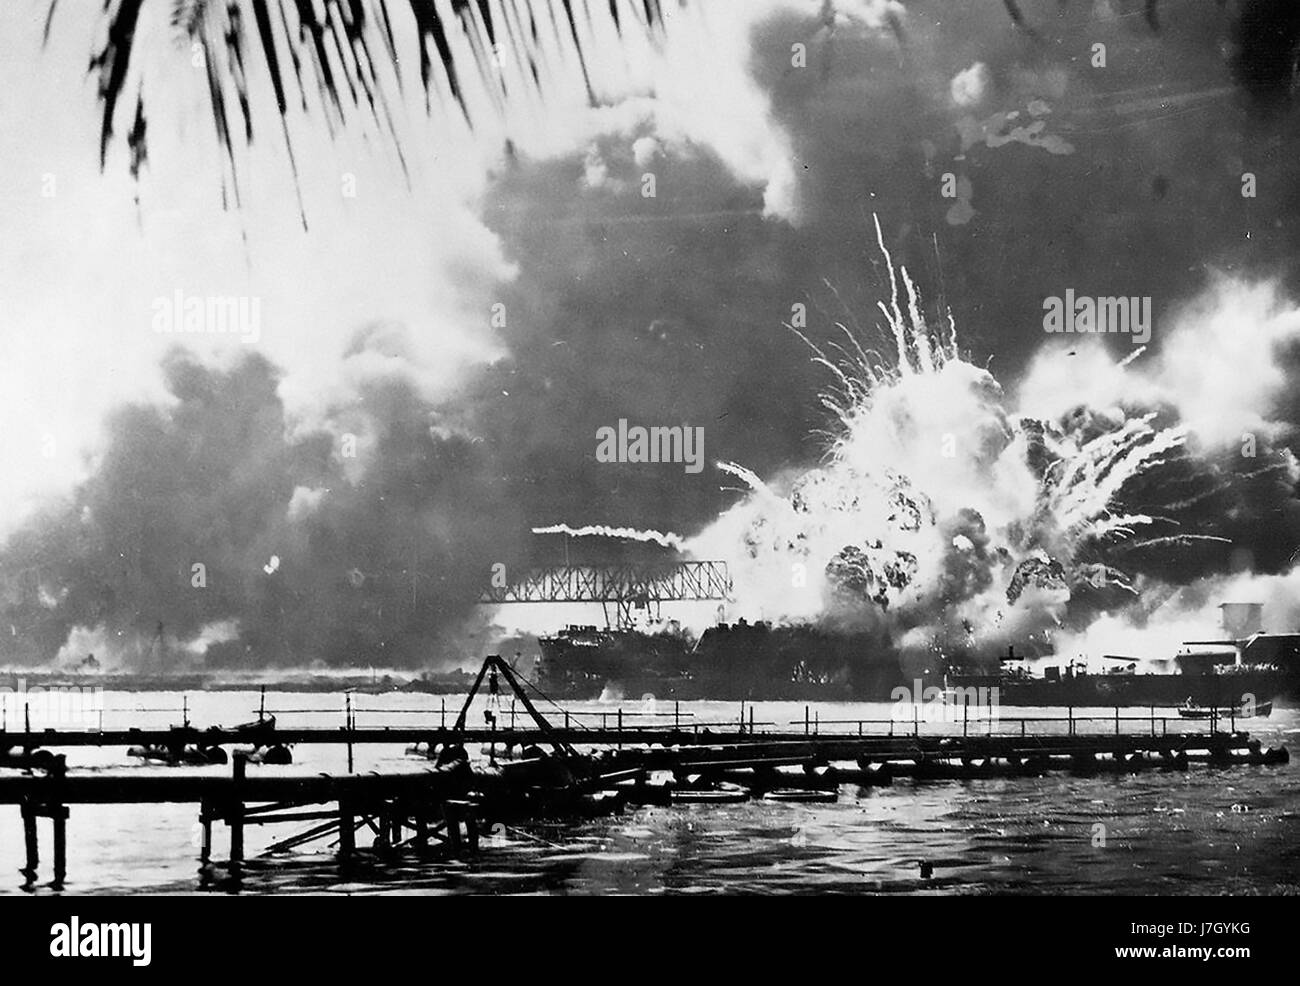 USS SHAW Zerstörer explodiert, wenn ihr nach vorne Munition Zeitschrift während des Angriffs von Pearl Harbor auf 7. Dezember 1941 in Brand gesteckt wurde Stockfoto